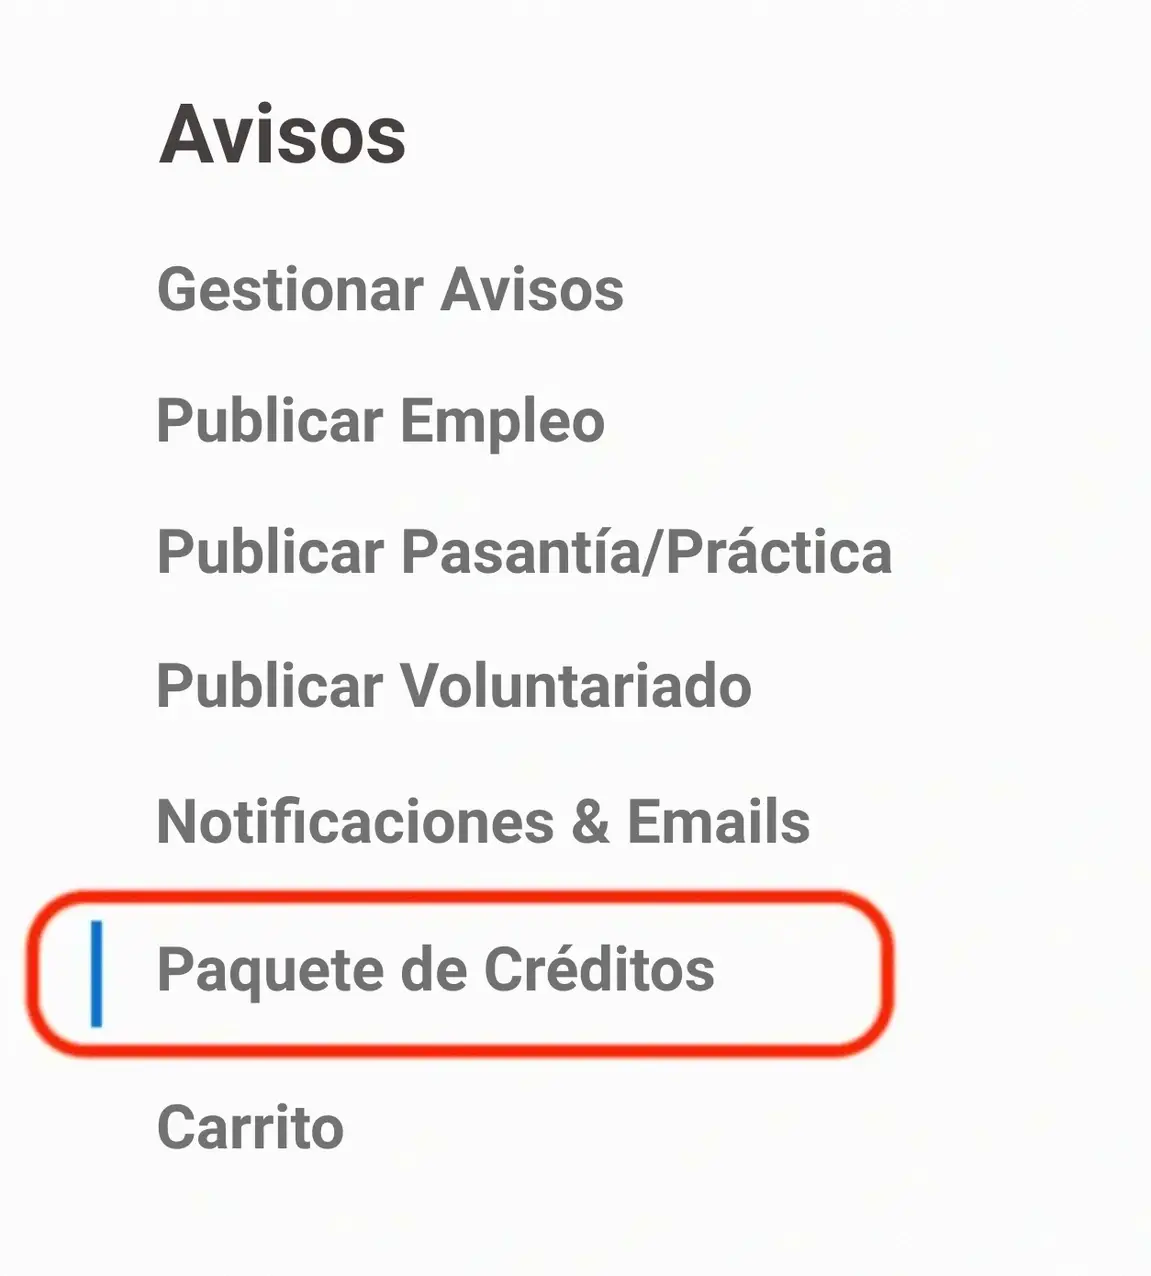 Captura de pantalla del botón para "Comprar un Paquete de Créditos" que aparece en el panel de la organización